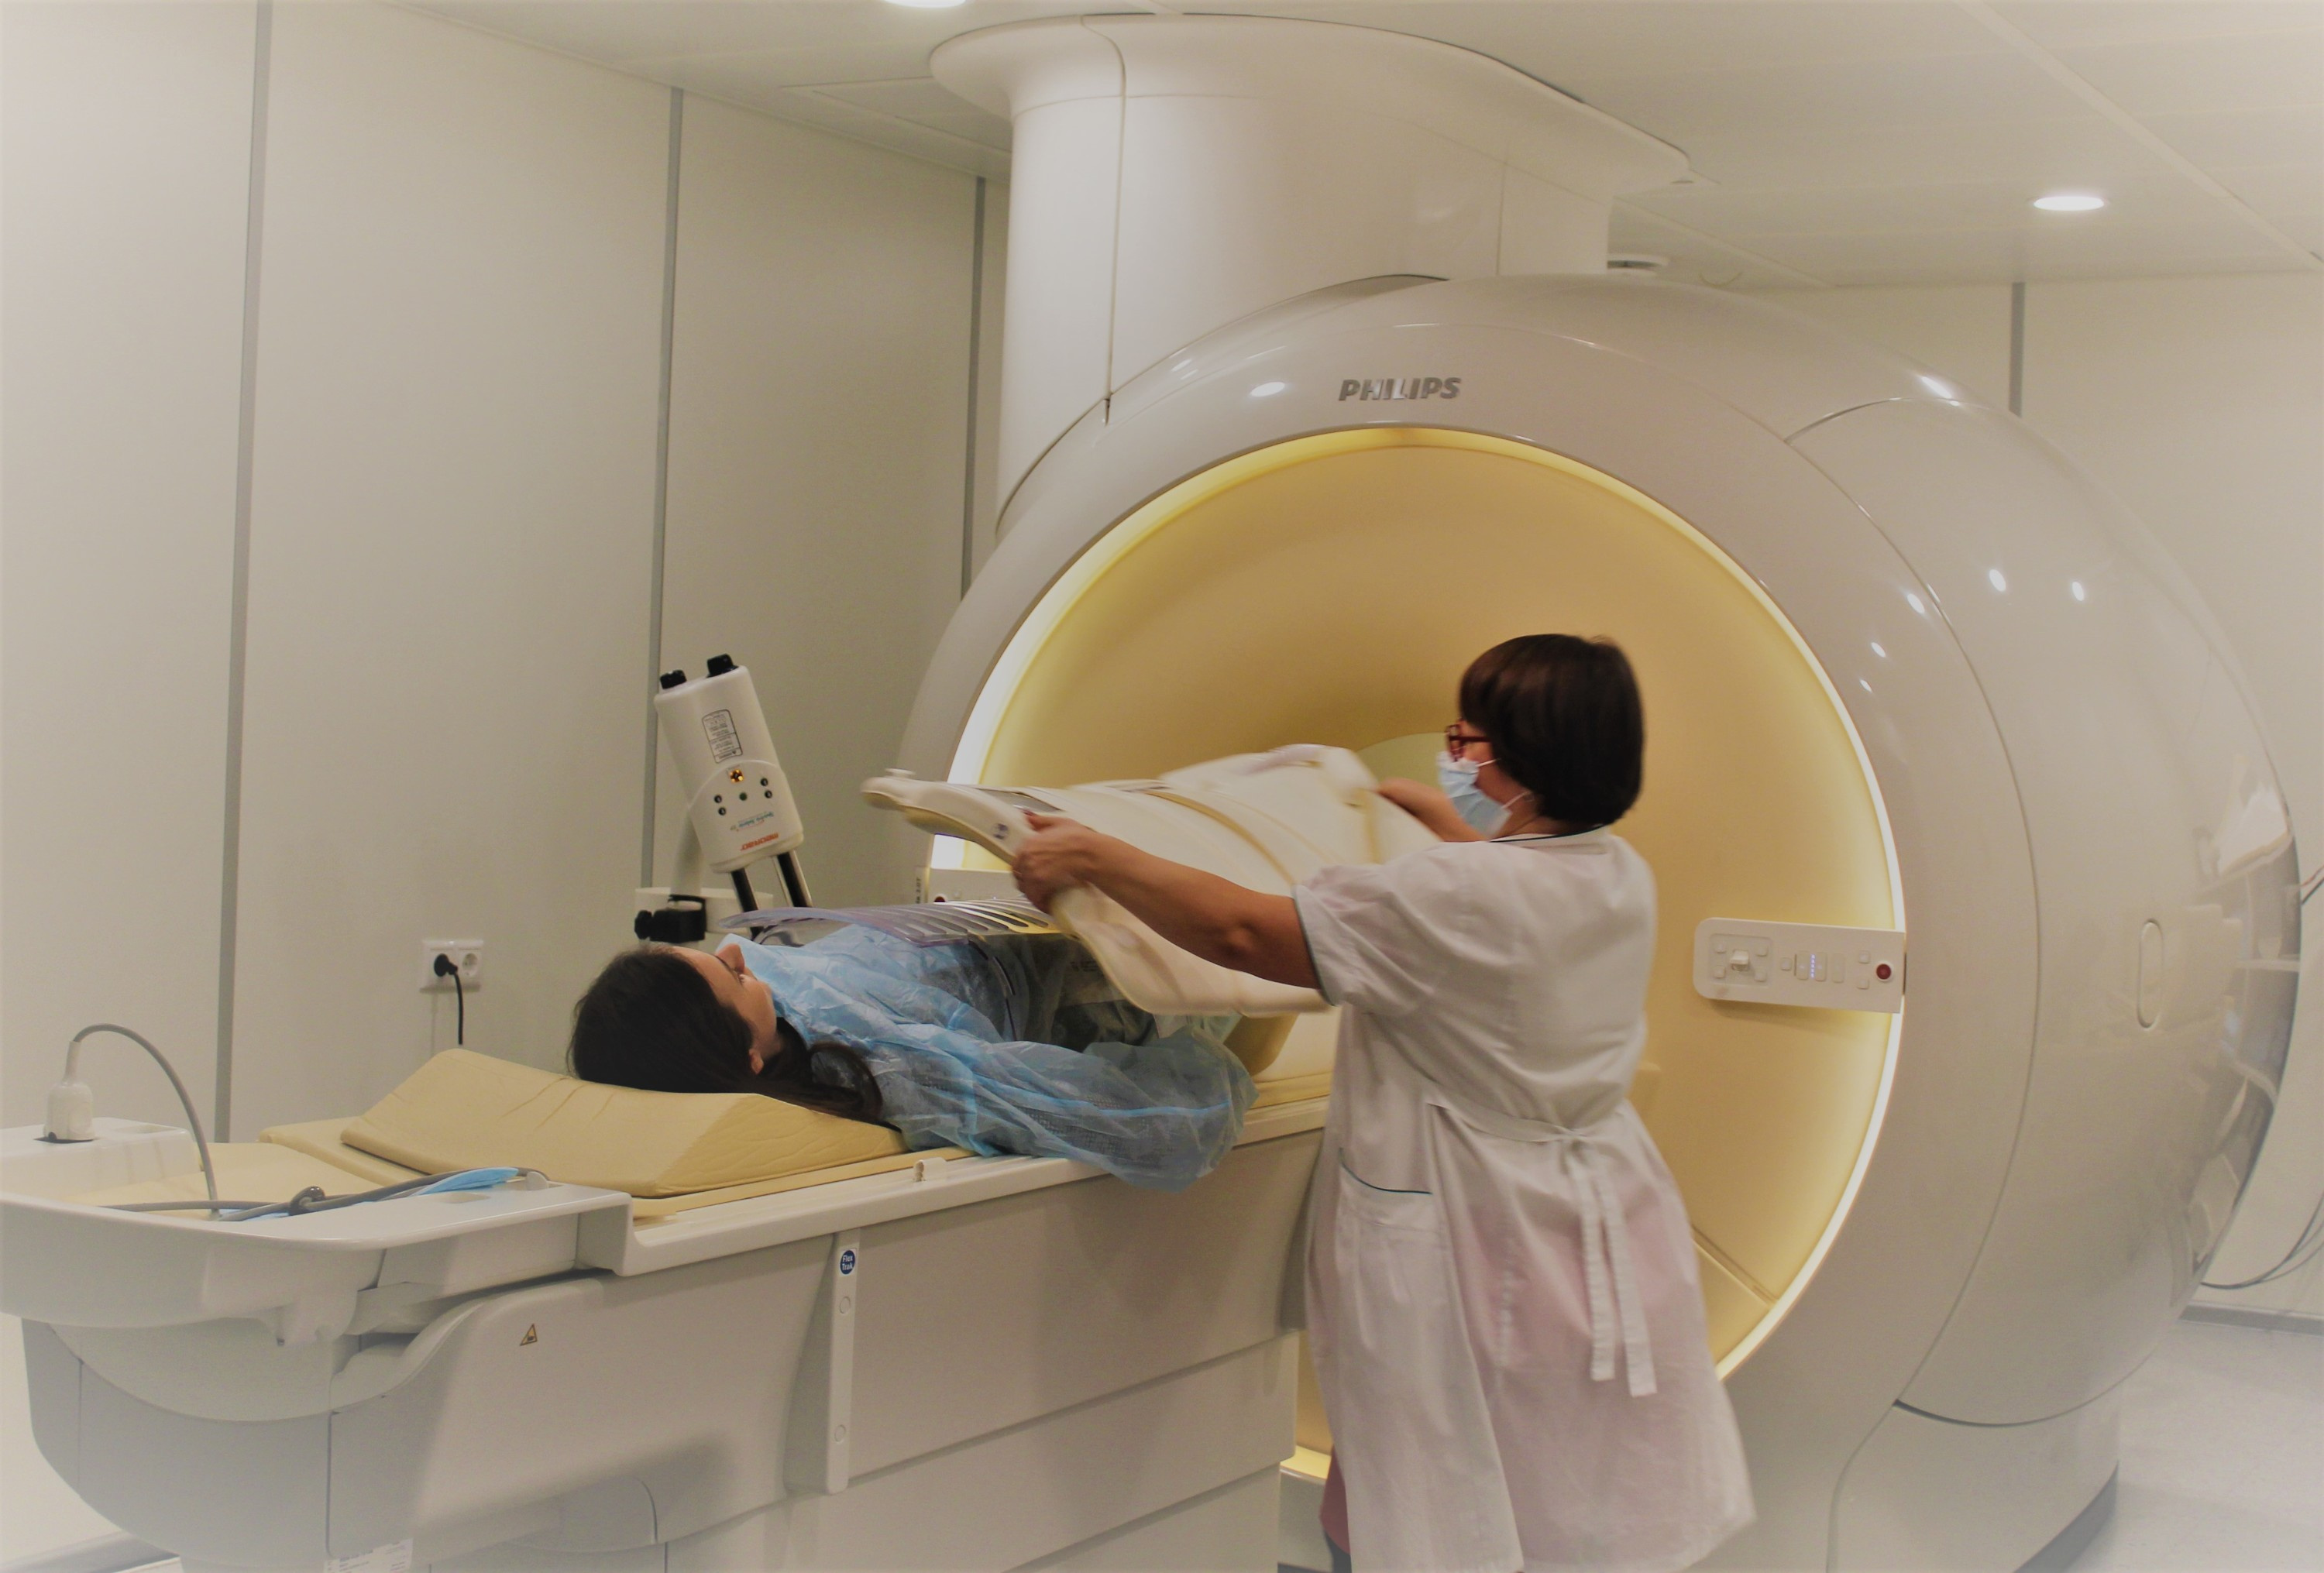 МРТ-исследование безопасно для будущей матери и малыша, неинвазивно и способно обеспечить хорошую визуализацию тканей и органов